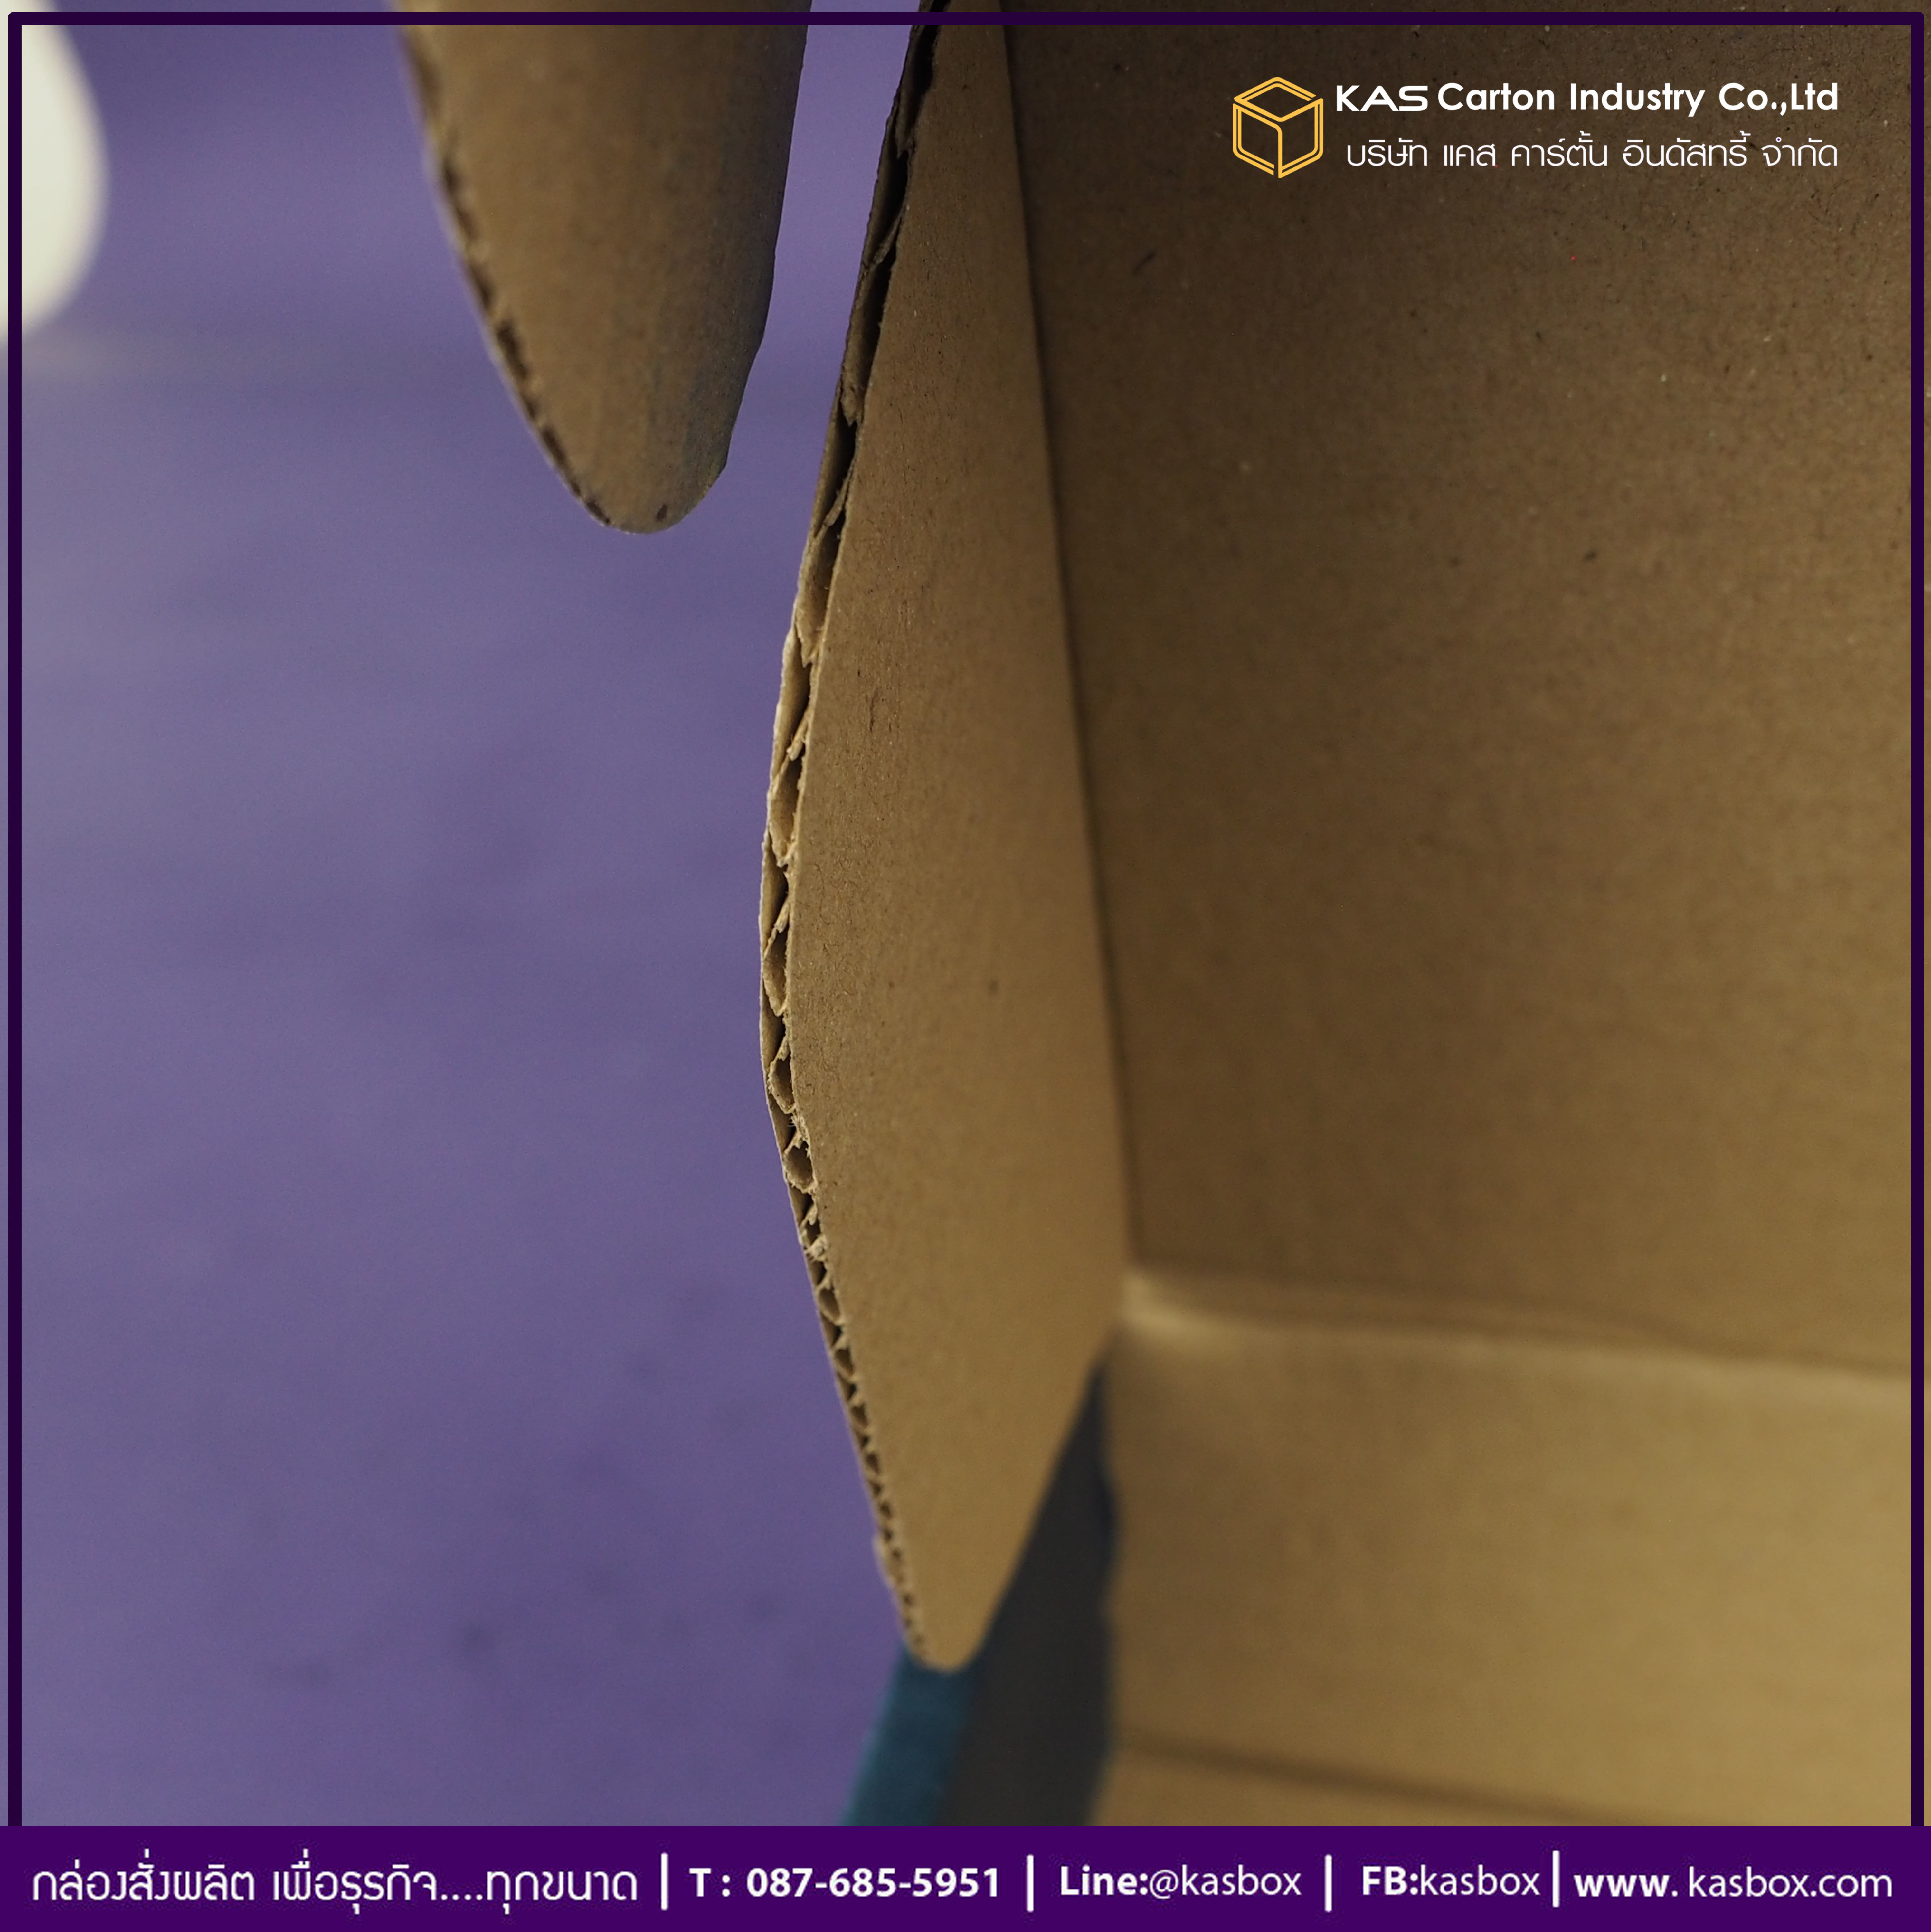 กล่องลูกฟูก สำเร็จรูป และ สั่งผลิต ตามความต้องการลูกค้า กล่องกระดาษลูกฟูก กล่องใส่เครื่องประดับ